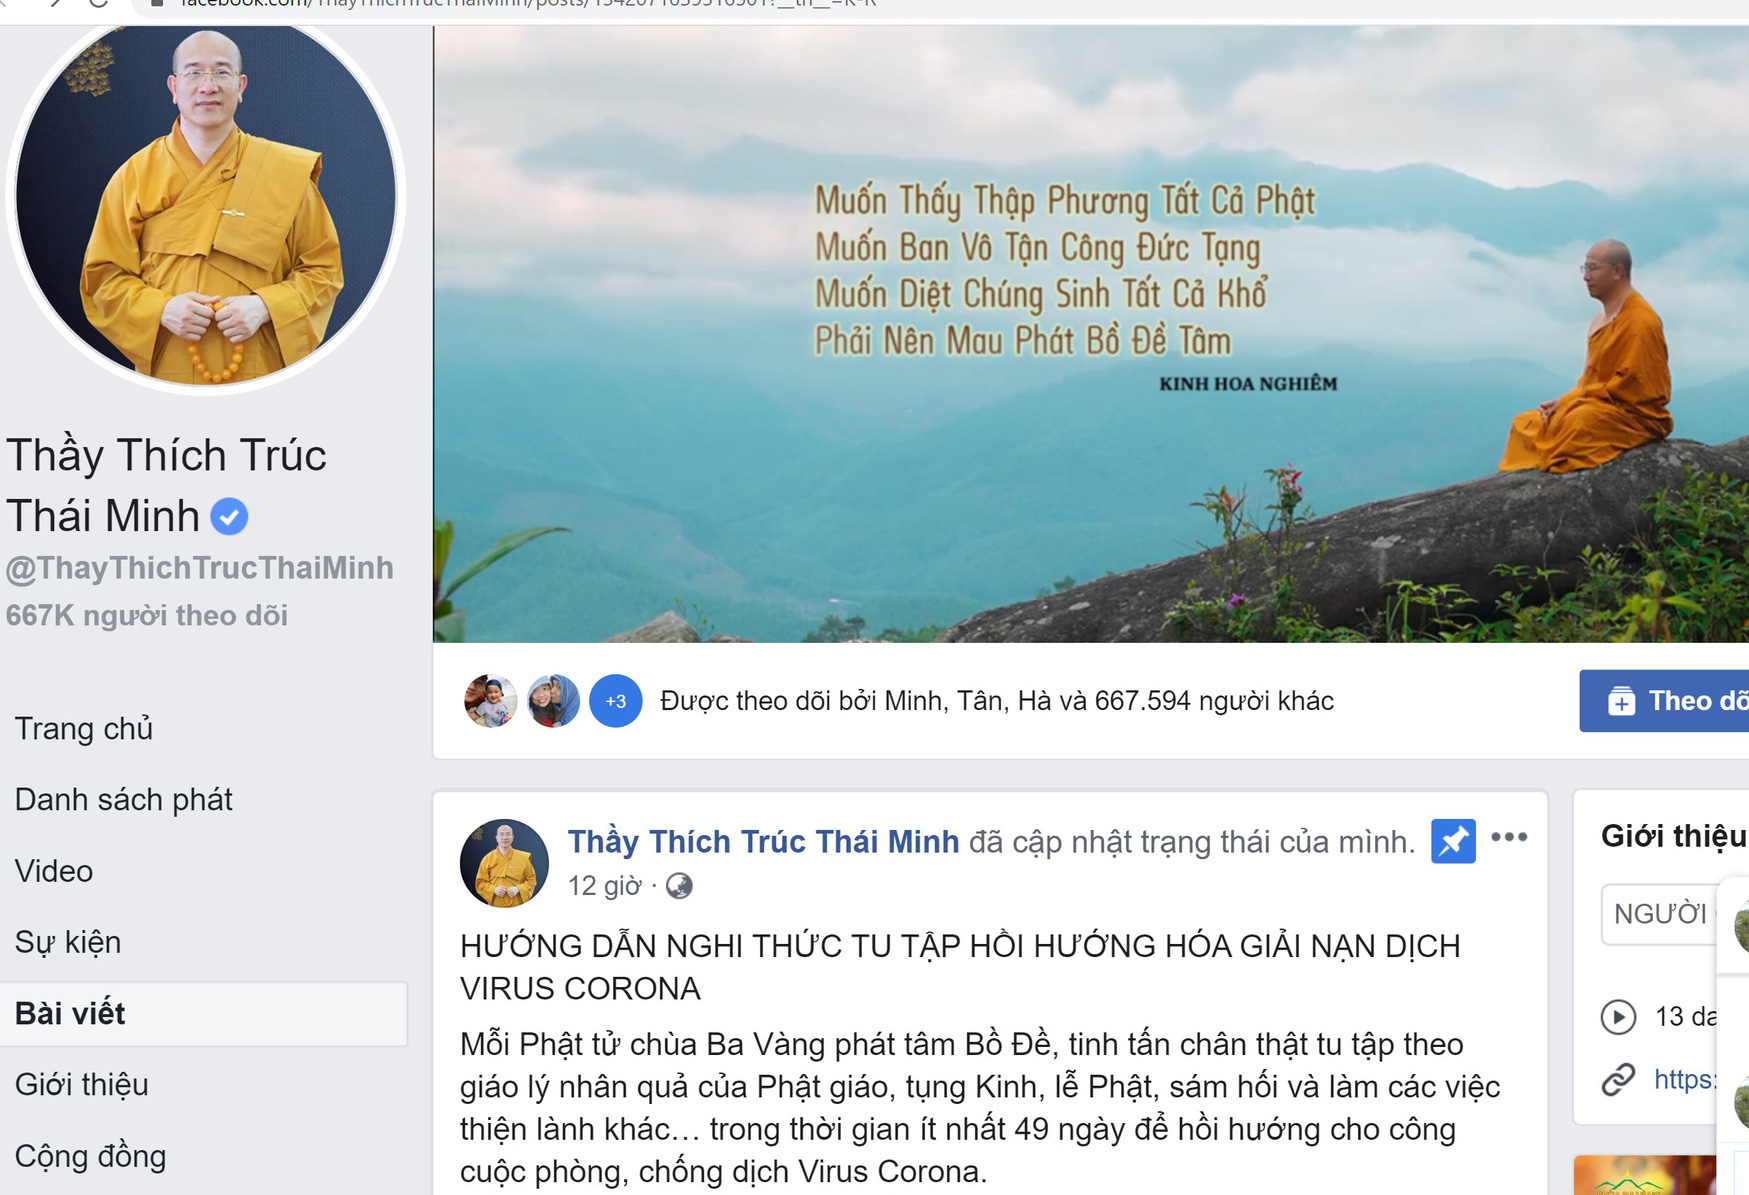 Facebook Thích Trúc Thái Minh tiếp tục rao giảng nghi thức tu tập hồi hướng hóa giải nạn dịch virus Corona - Ảnh 1.